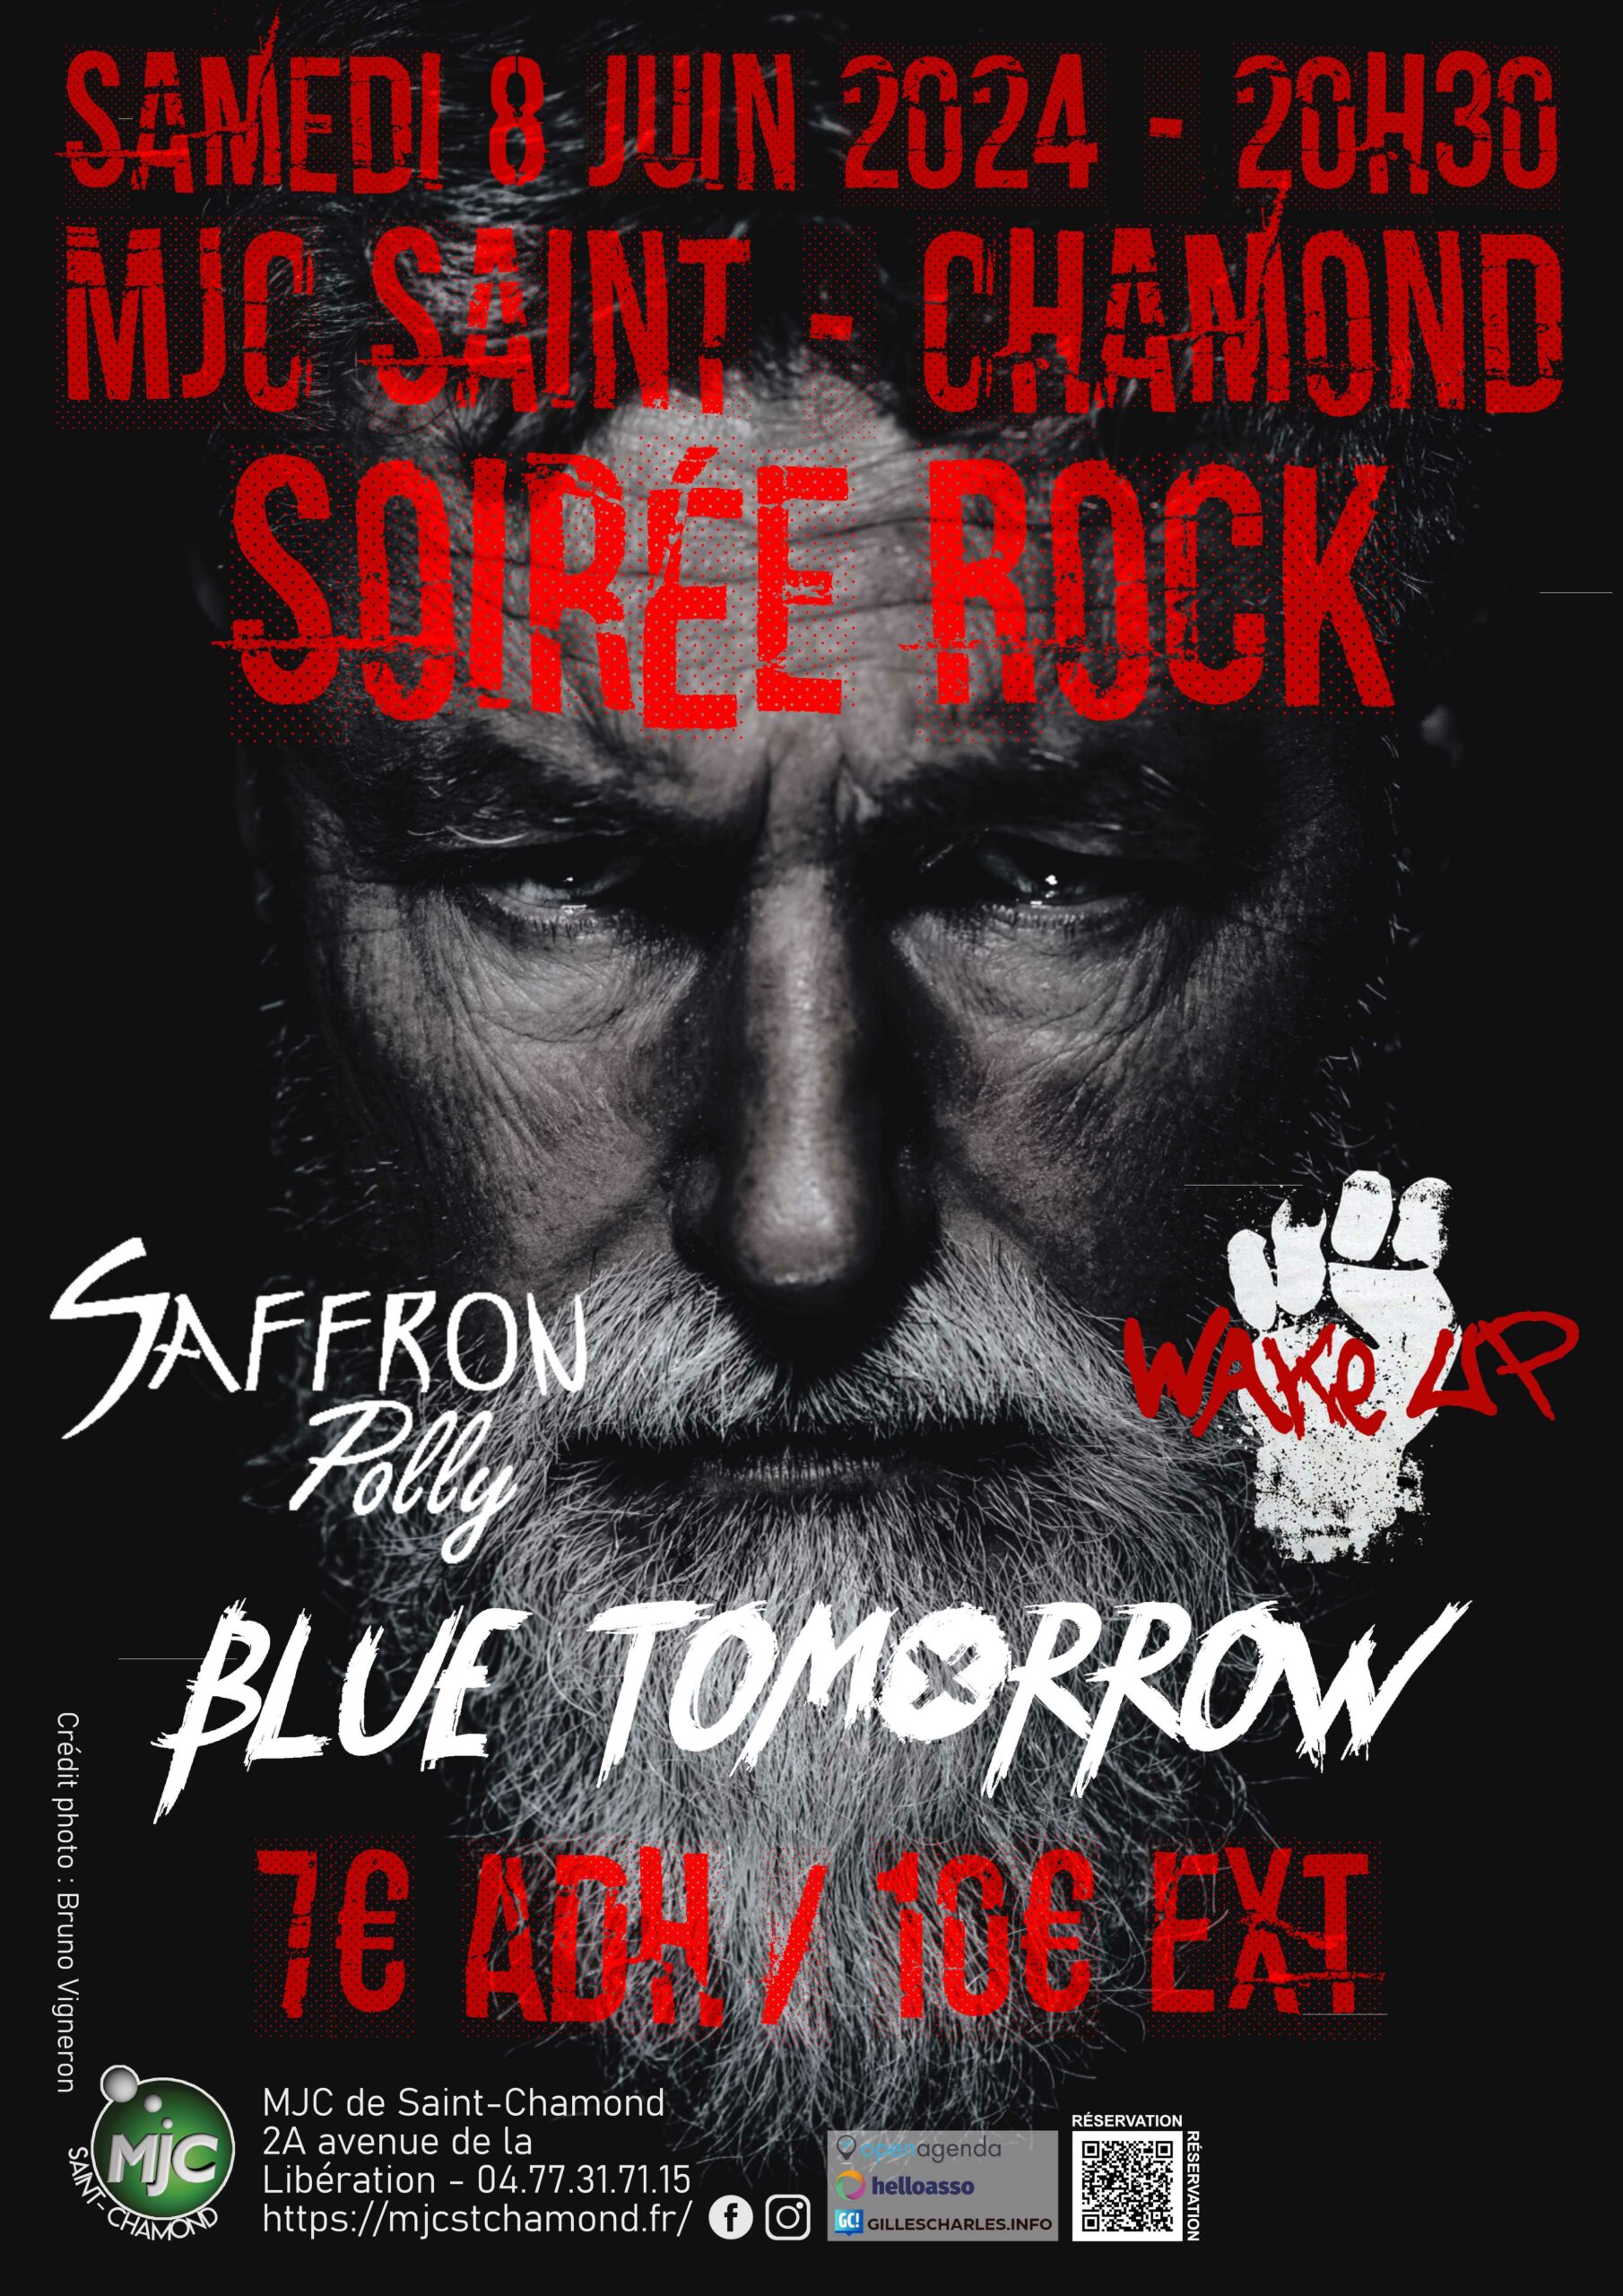 Affiche Soirée Rock de la MJC de Saint-Chamond